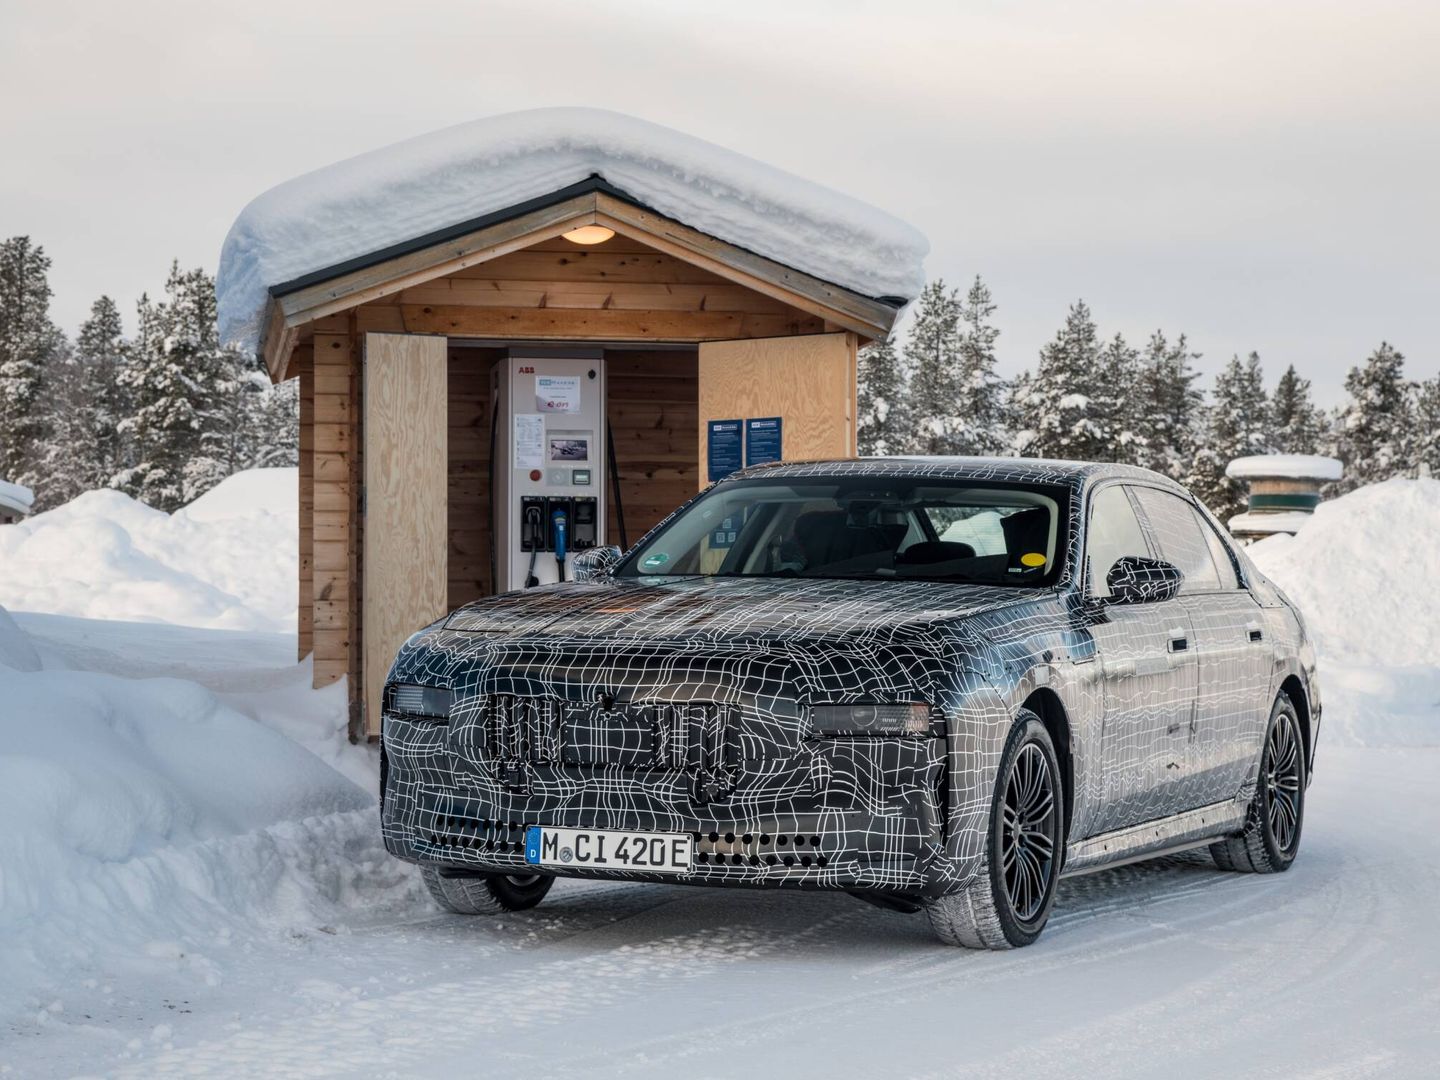 En los test invernales previos al lanzamiento de nuevos eléctricos, se comprueba la influencia del frío extremo en la recarga. (BMW)